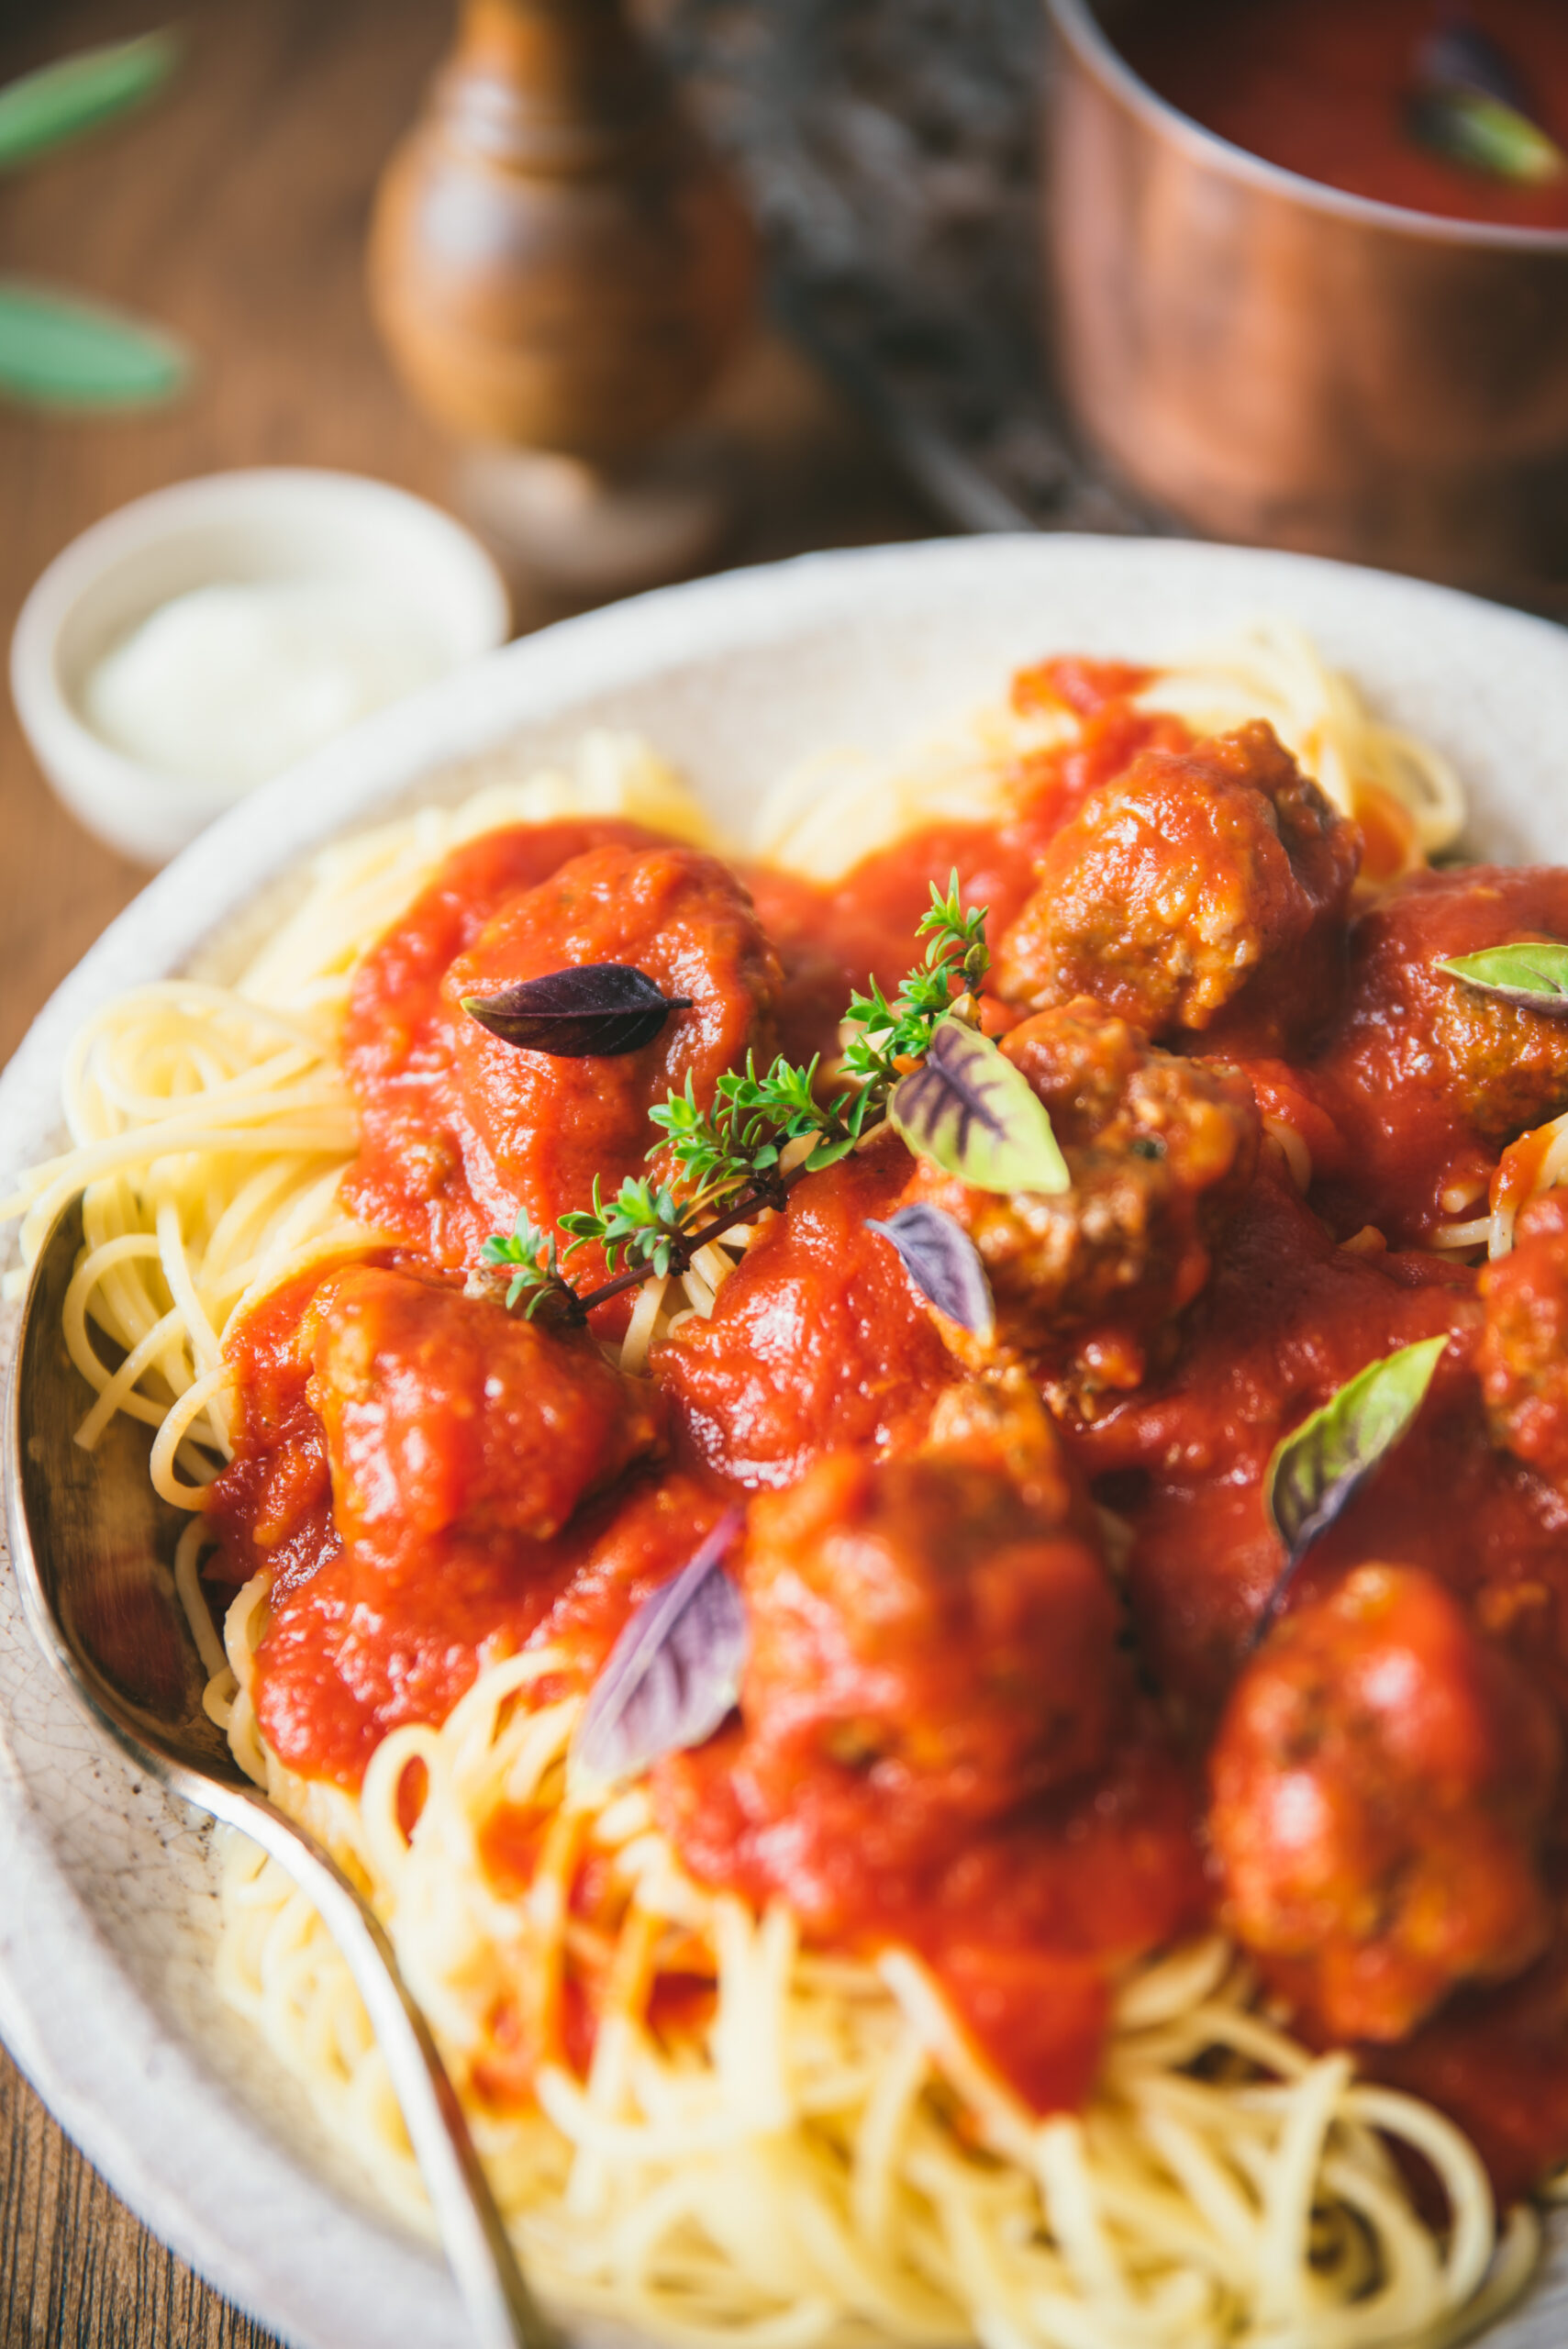 Spaghetti and meatballs in tomato sauce